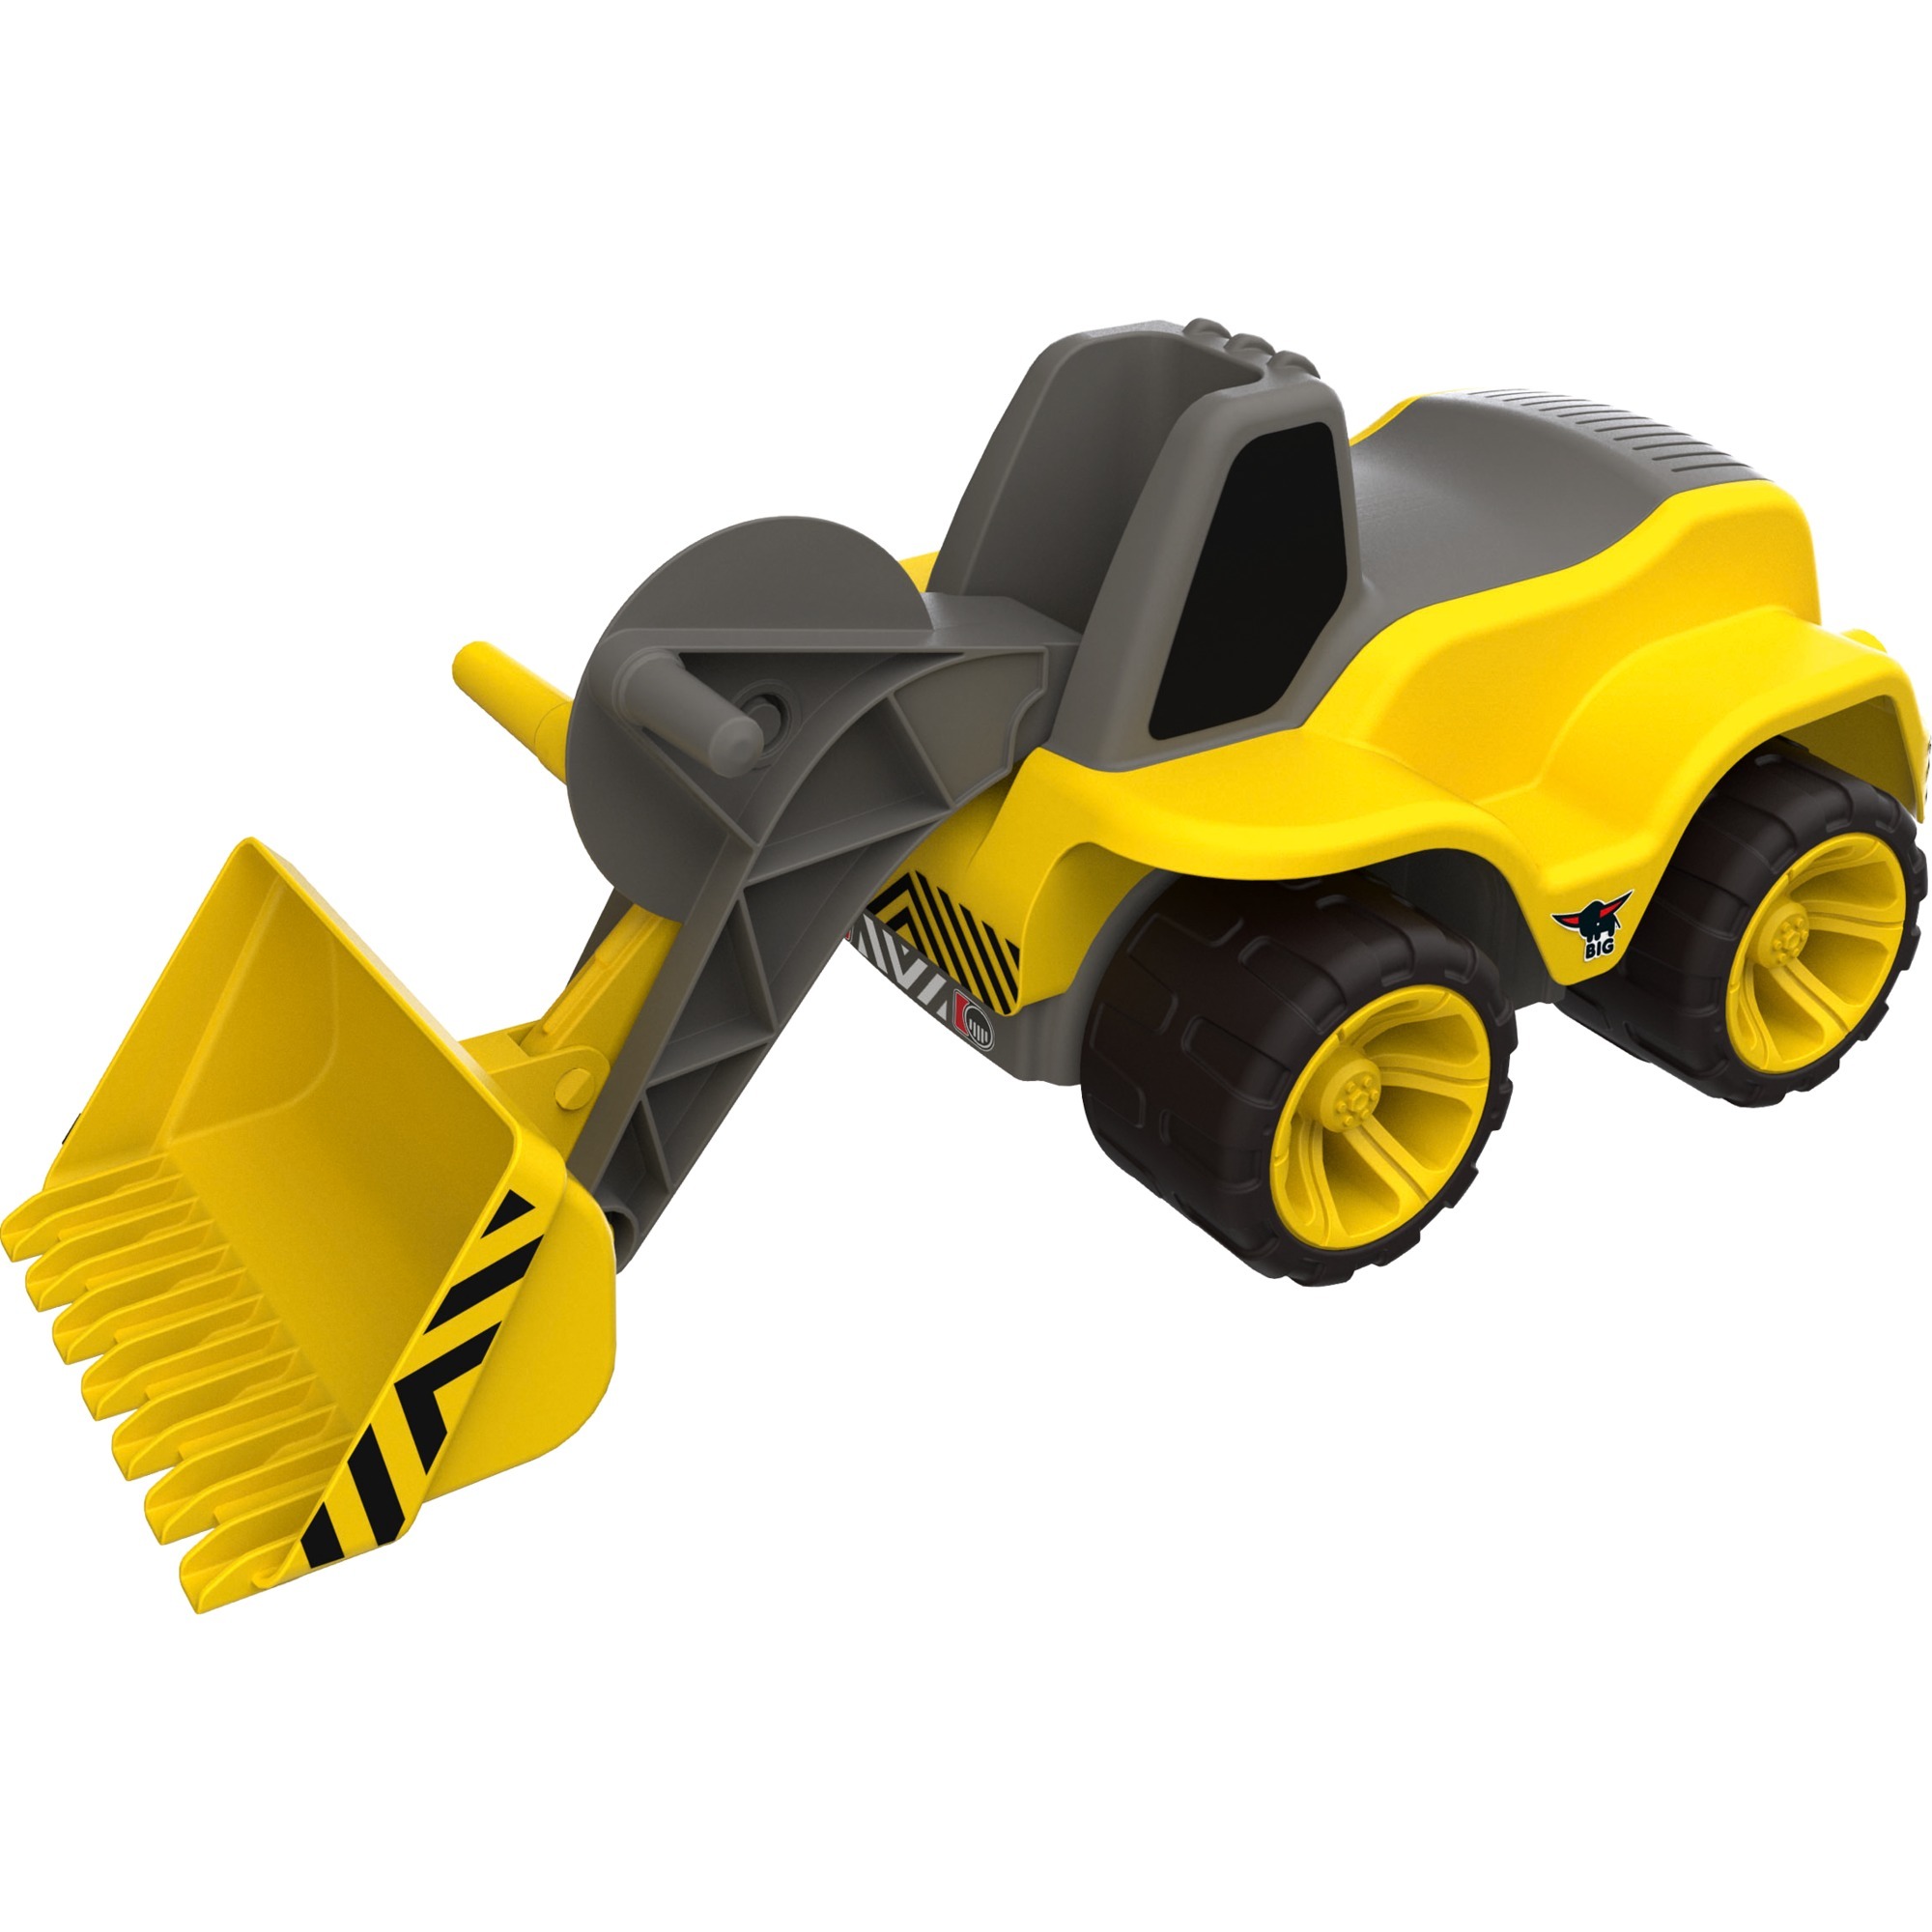 Image of Alternate - Power-Worker Maxi-Loader, Kinderfahrzeug online einkaufen bei Alternate